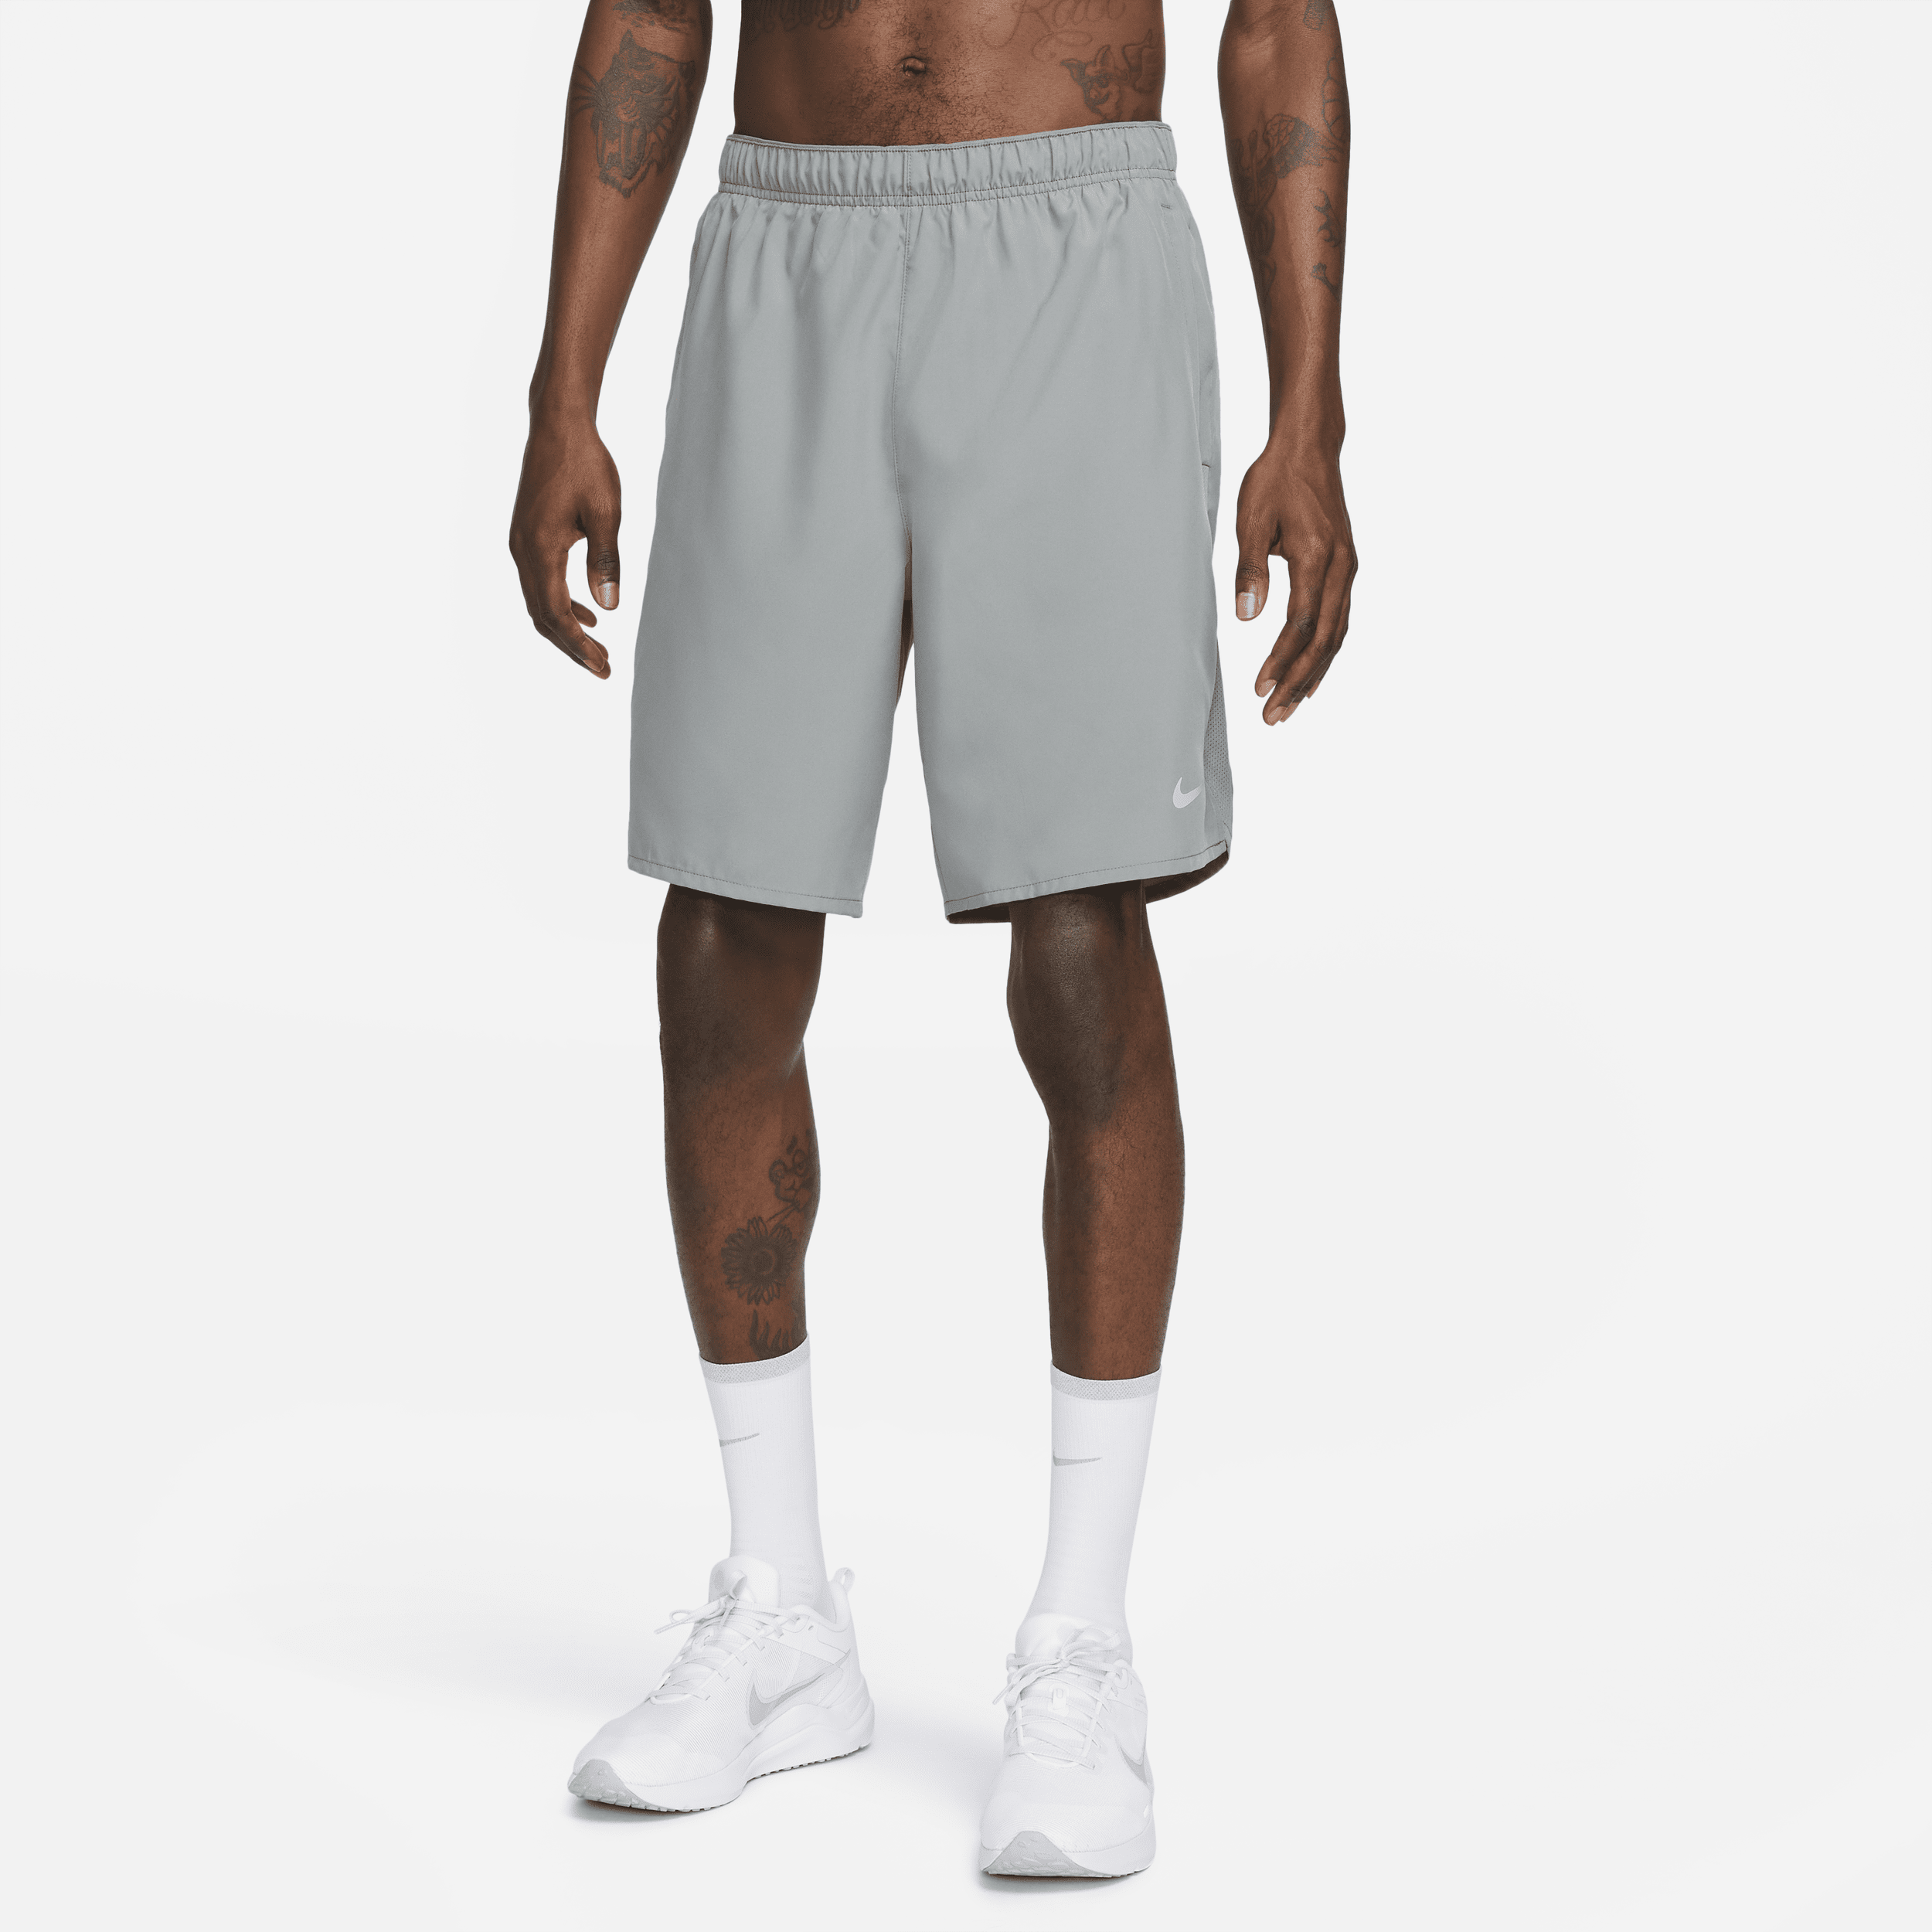 Alsidige Nike Challenger Dri-FIT-shorts (23 cm) uden for til mænd - grå